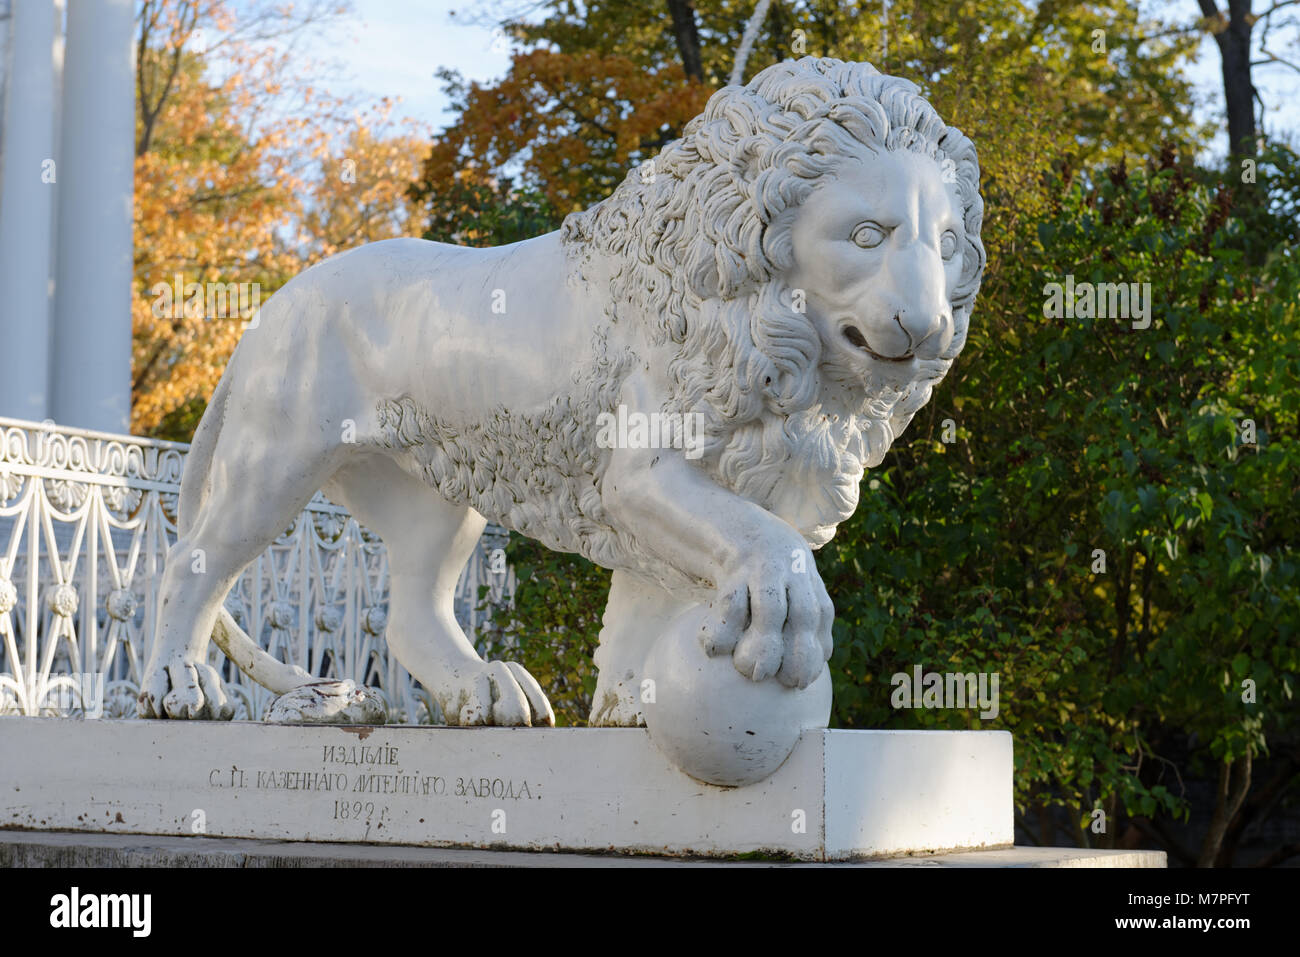 Saint-pétersbourg, Russie - le 16 octobre 2015 : Sculpture de lion en face du Palais Yelagin. Créé en 1822, c'était la première des statues de lion en fonte à l'al. Banque D'Images